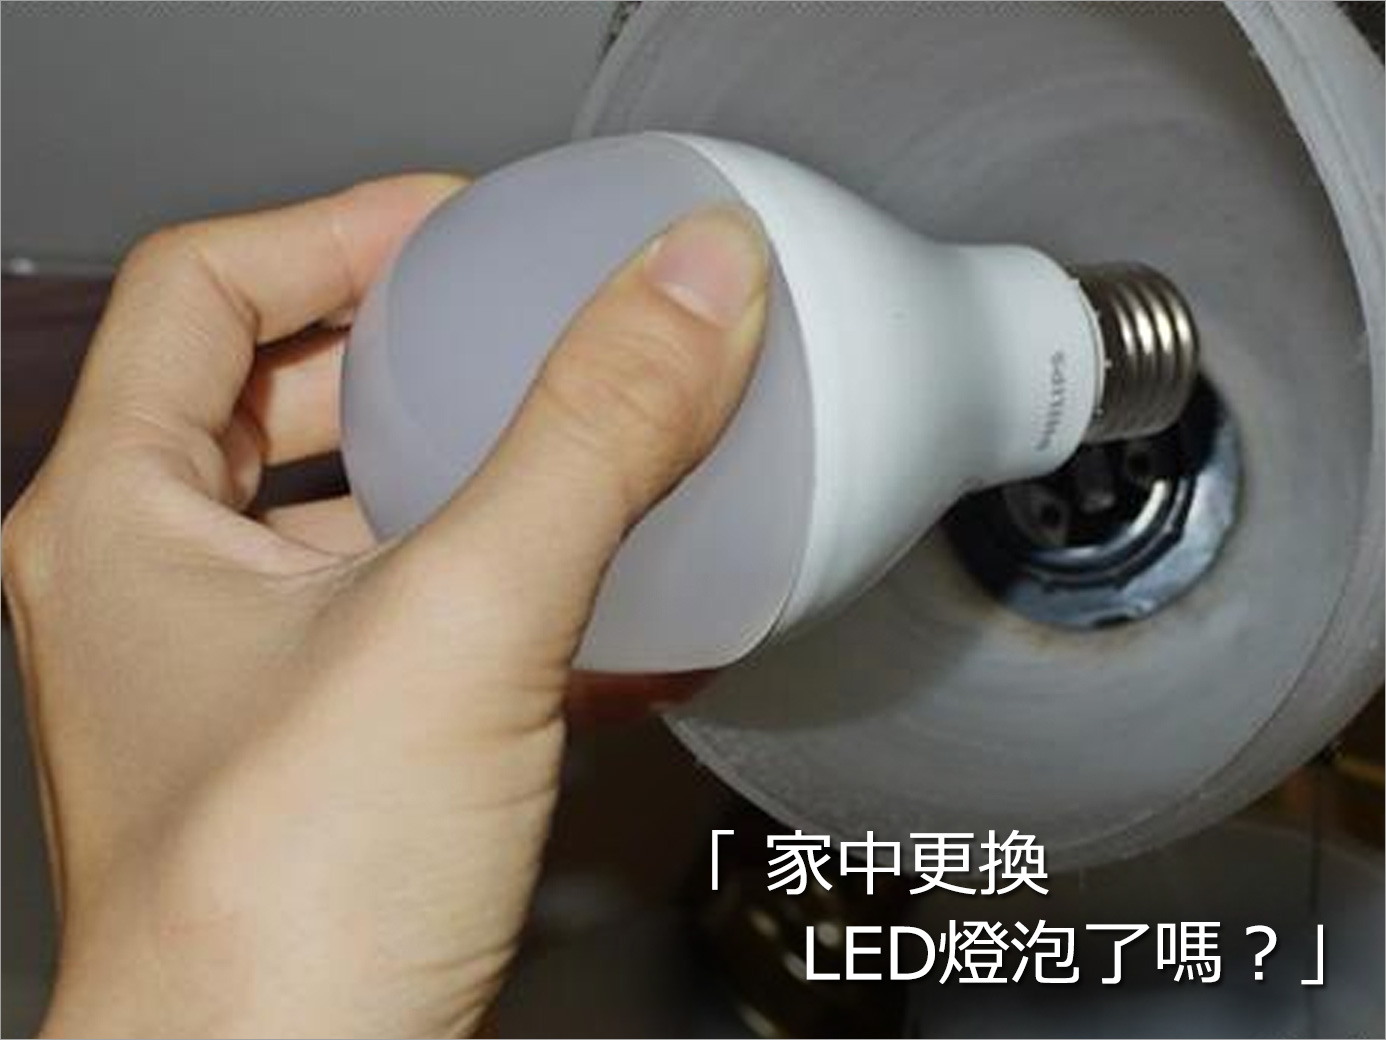 還在使用傳統燈泡嗎？在新型LED燈泡的推廣下，你是否已經更換使用LED燈泡呢？